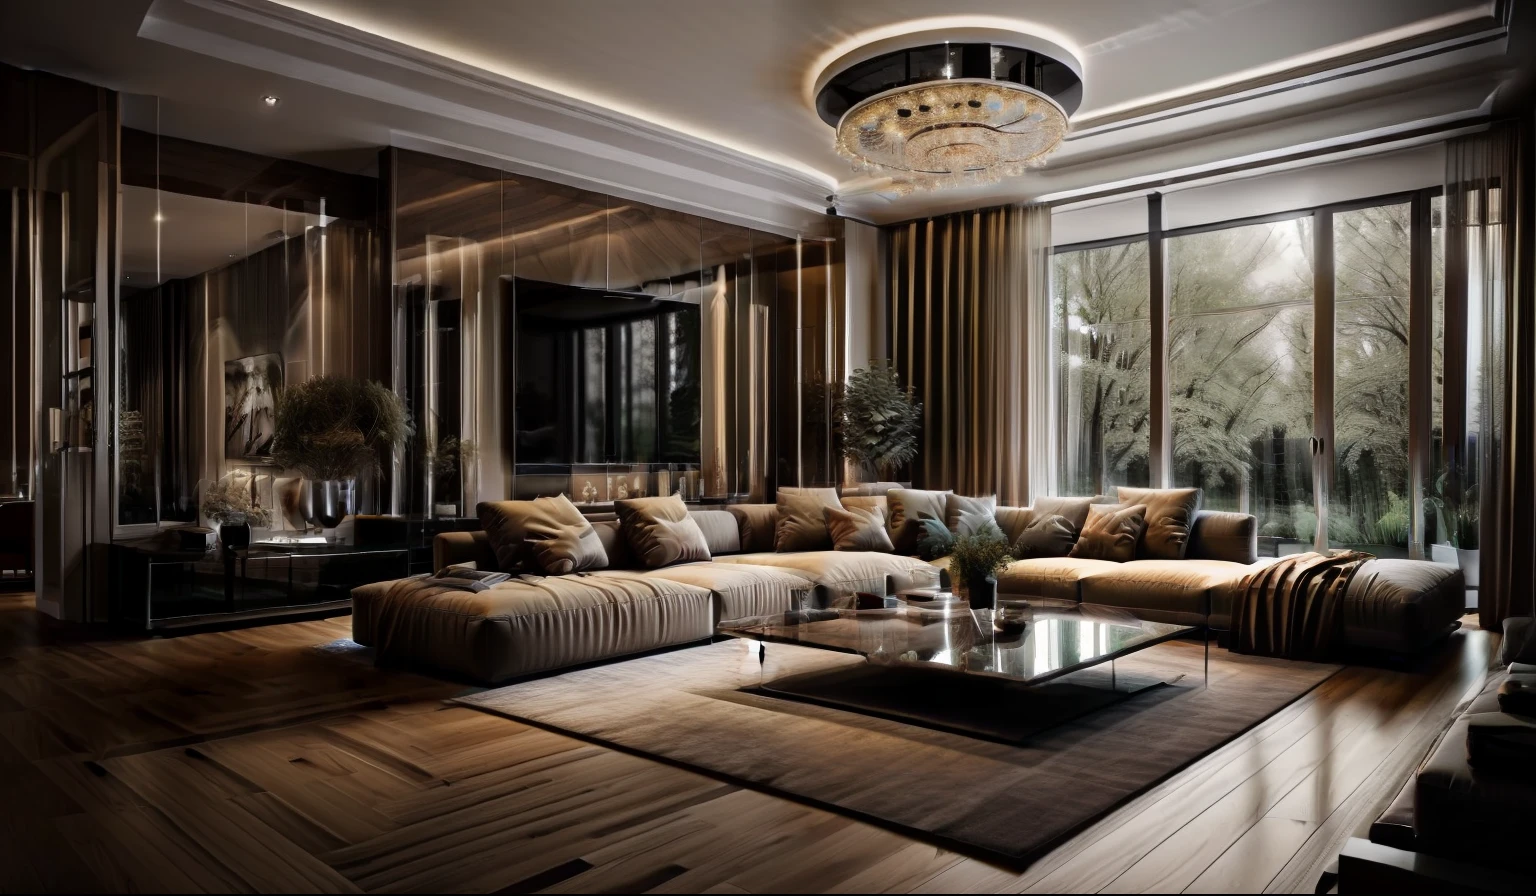 ((最好的质量, 8千, 杰作 :1.3)) (客厅简约设计: 1.3)  极简主义家具 , 沙发 , 石膏天花板 , 光滑的大理石地板 , 水墨艺术 , 墙板